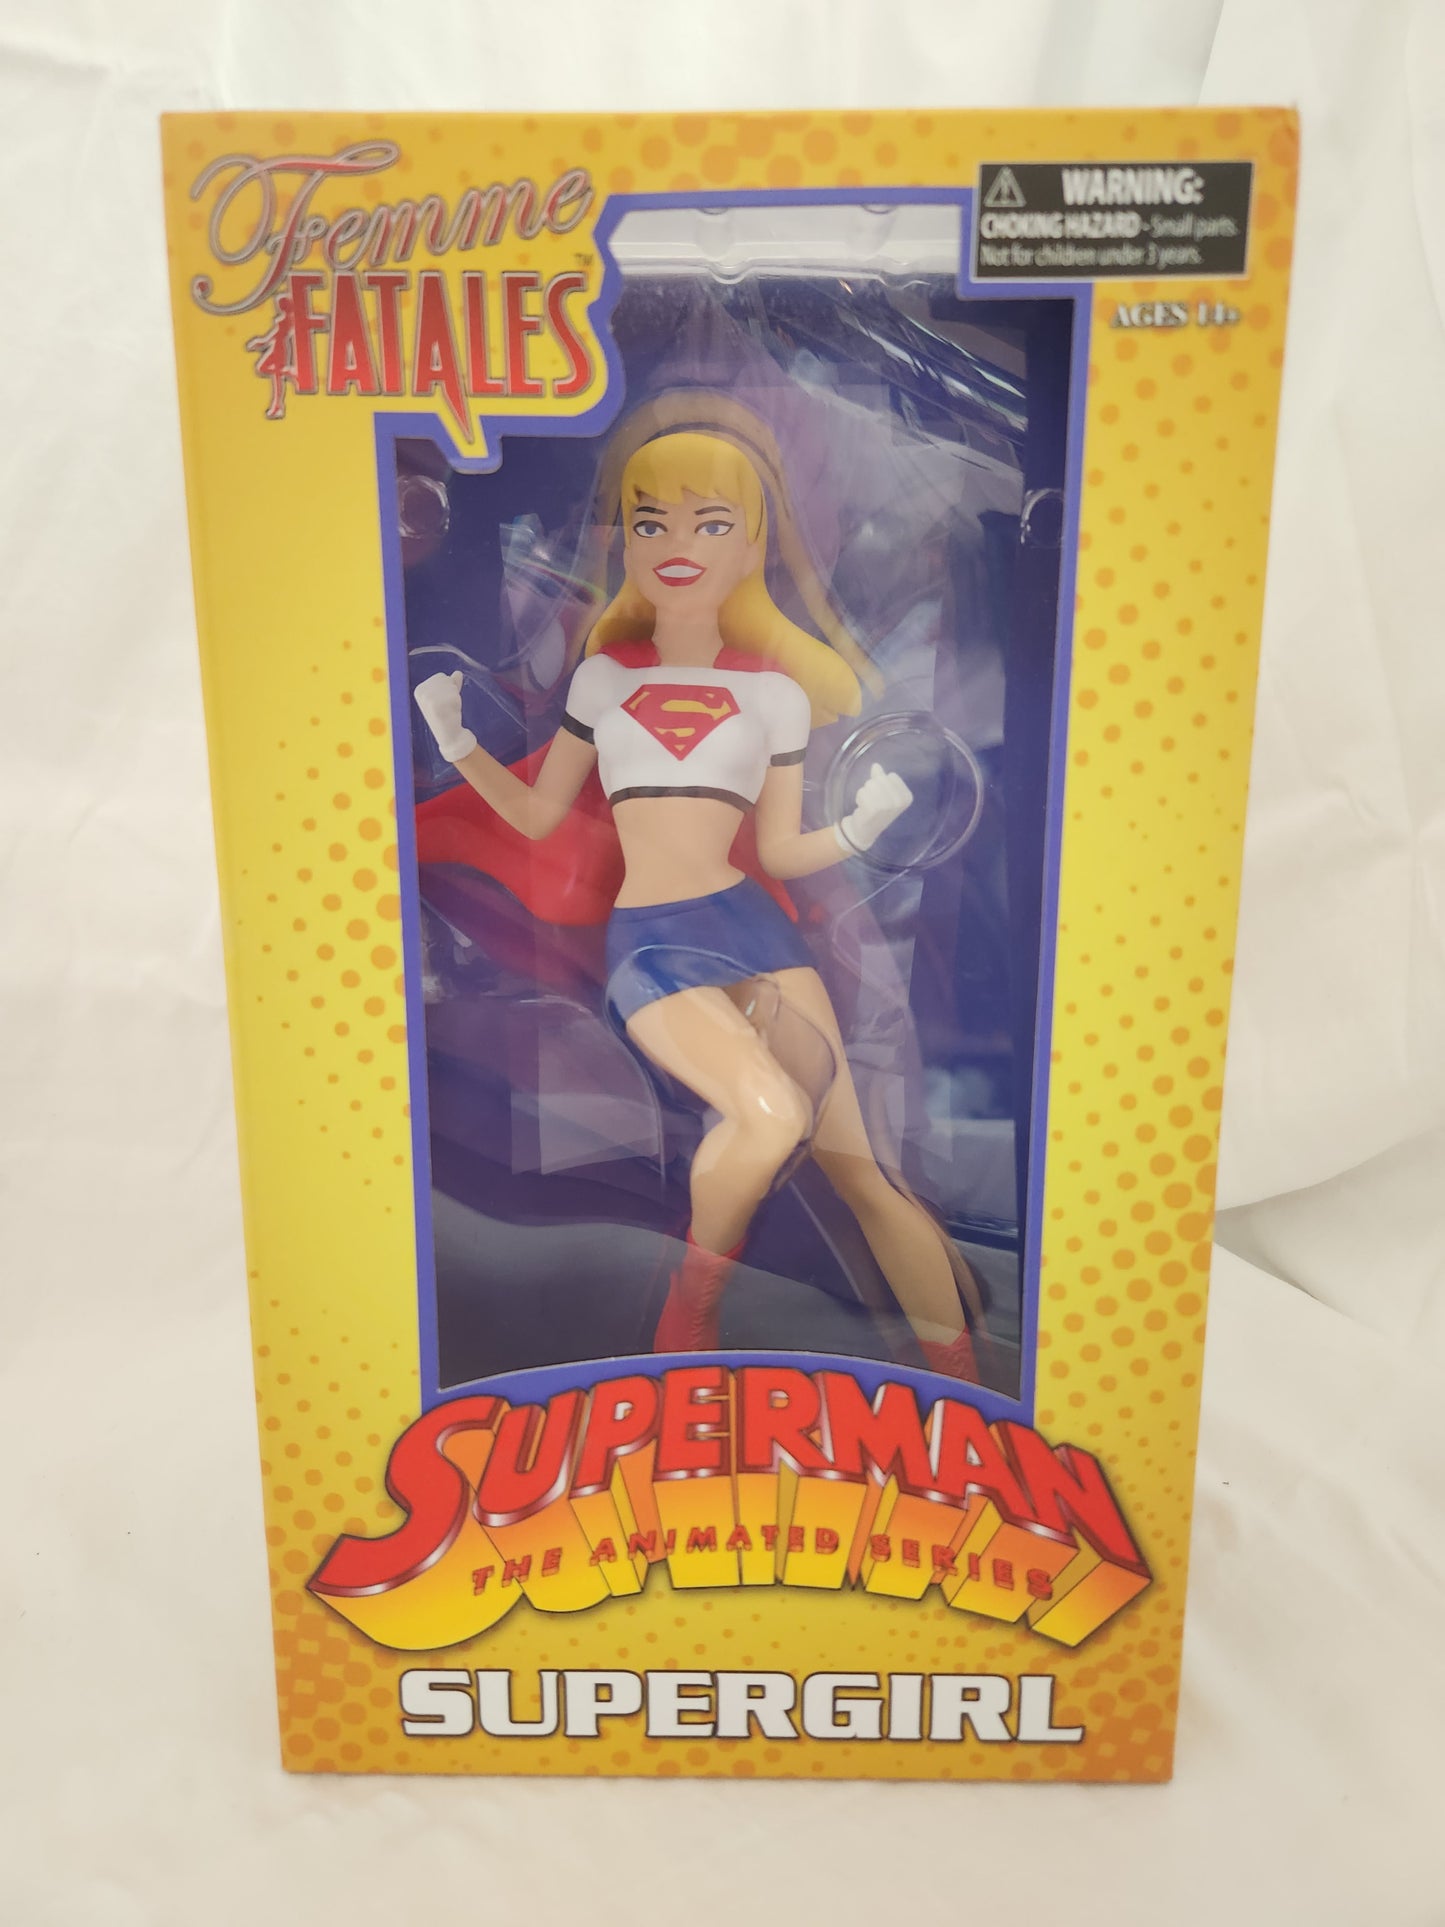 NIB - Femme Fatales Superman the animated series Supergirl Figurine